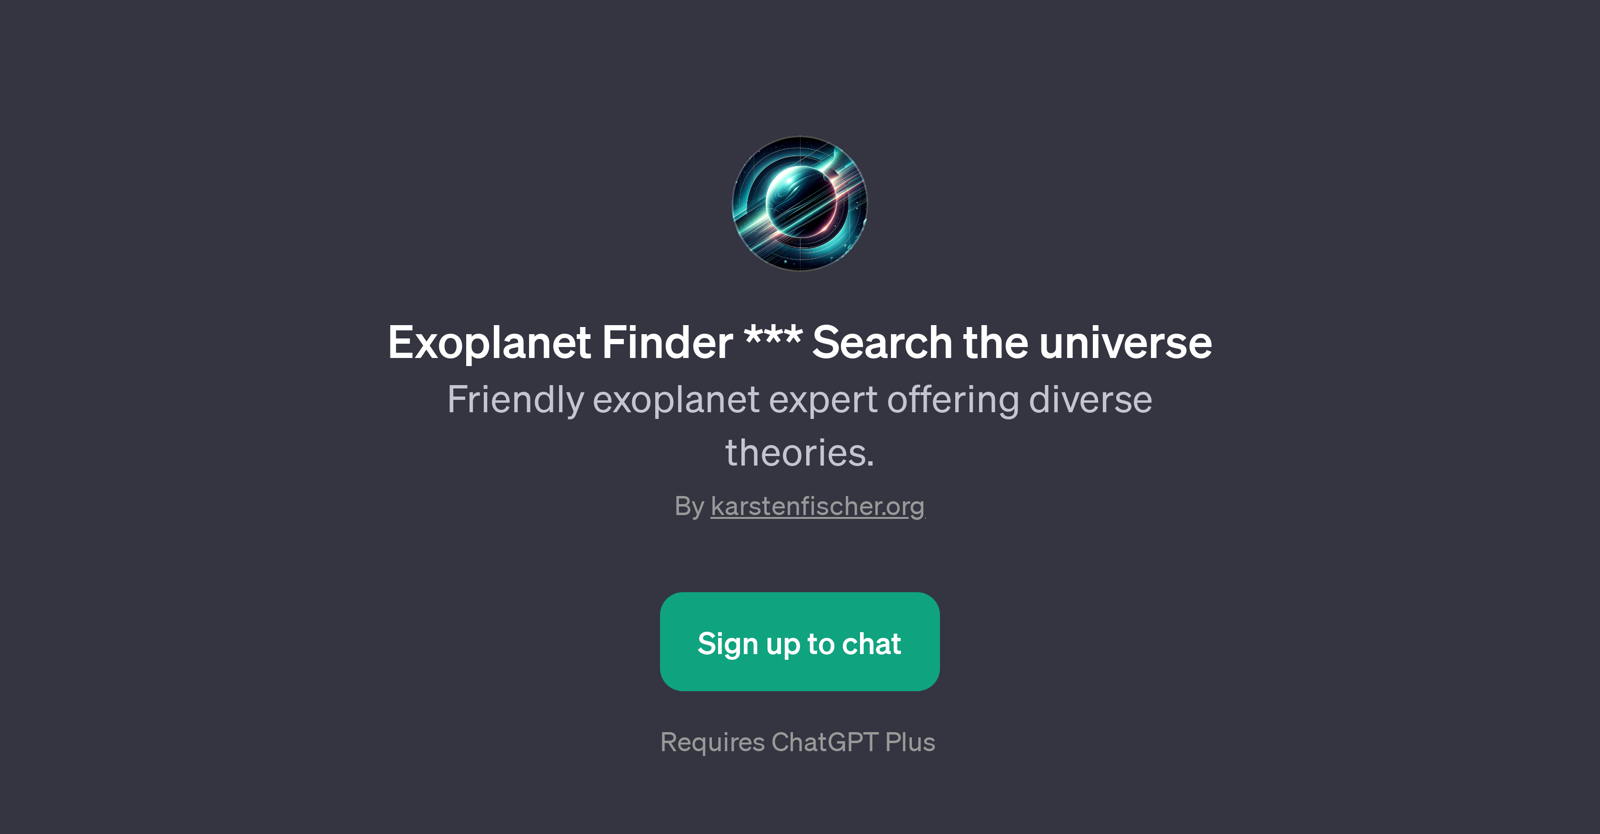 Exoplanet Finder website